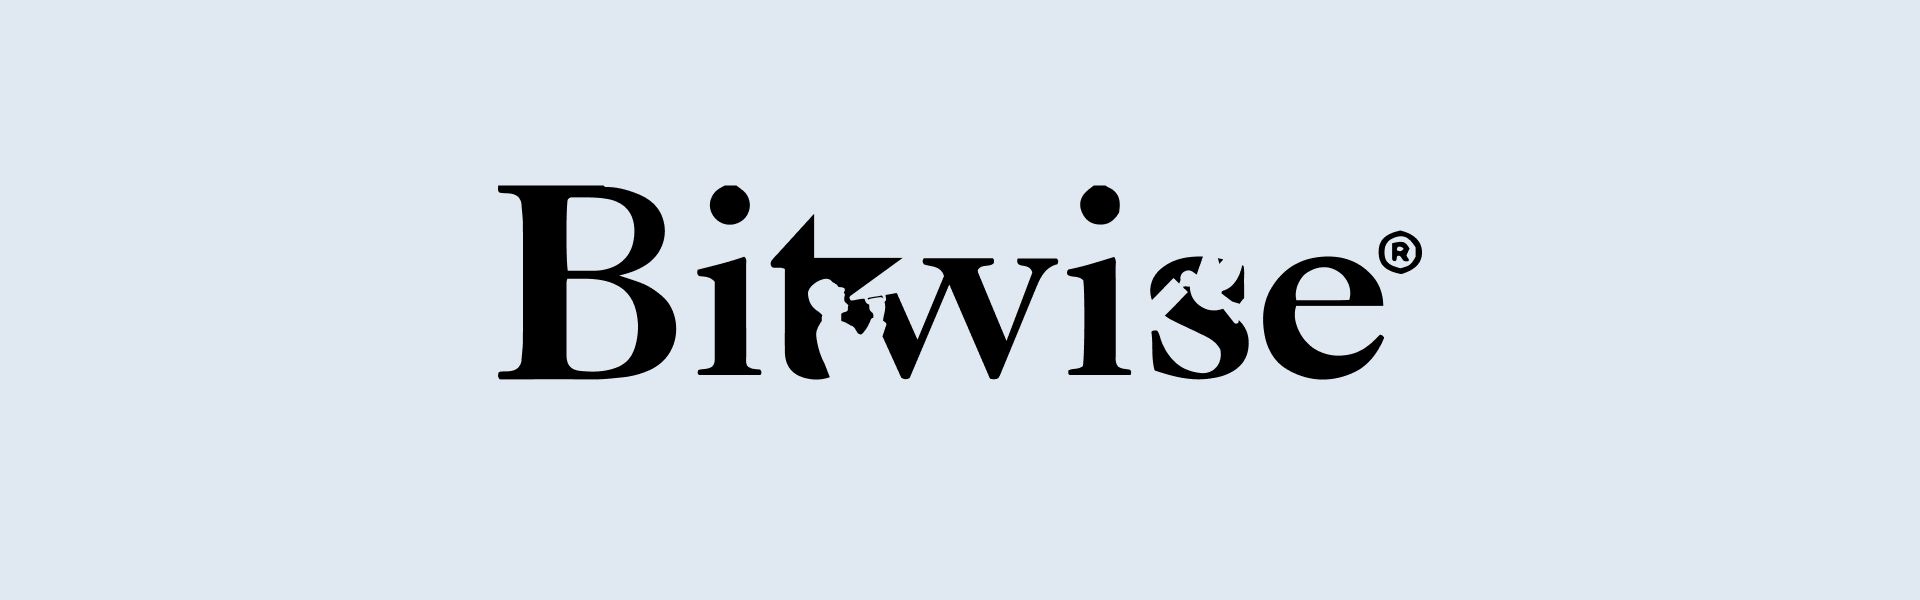 Bitwise відкликала заявку на запуск біткоїн-ETF